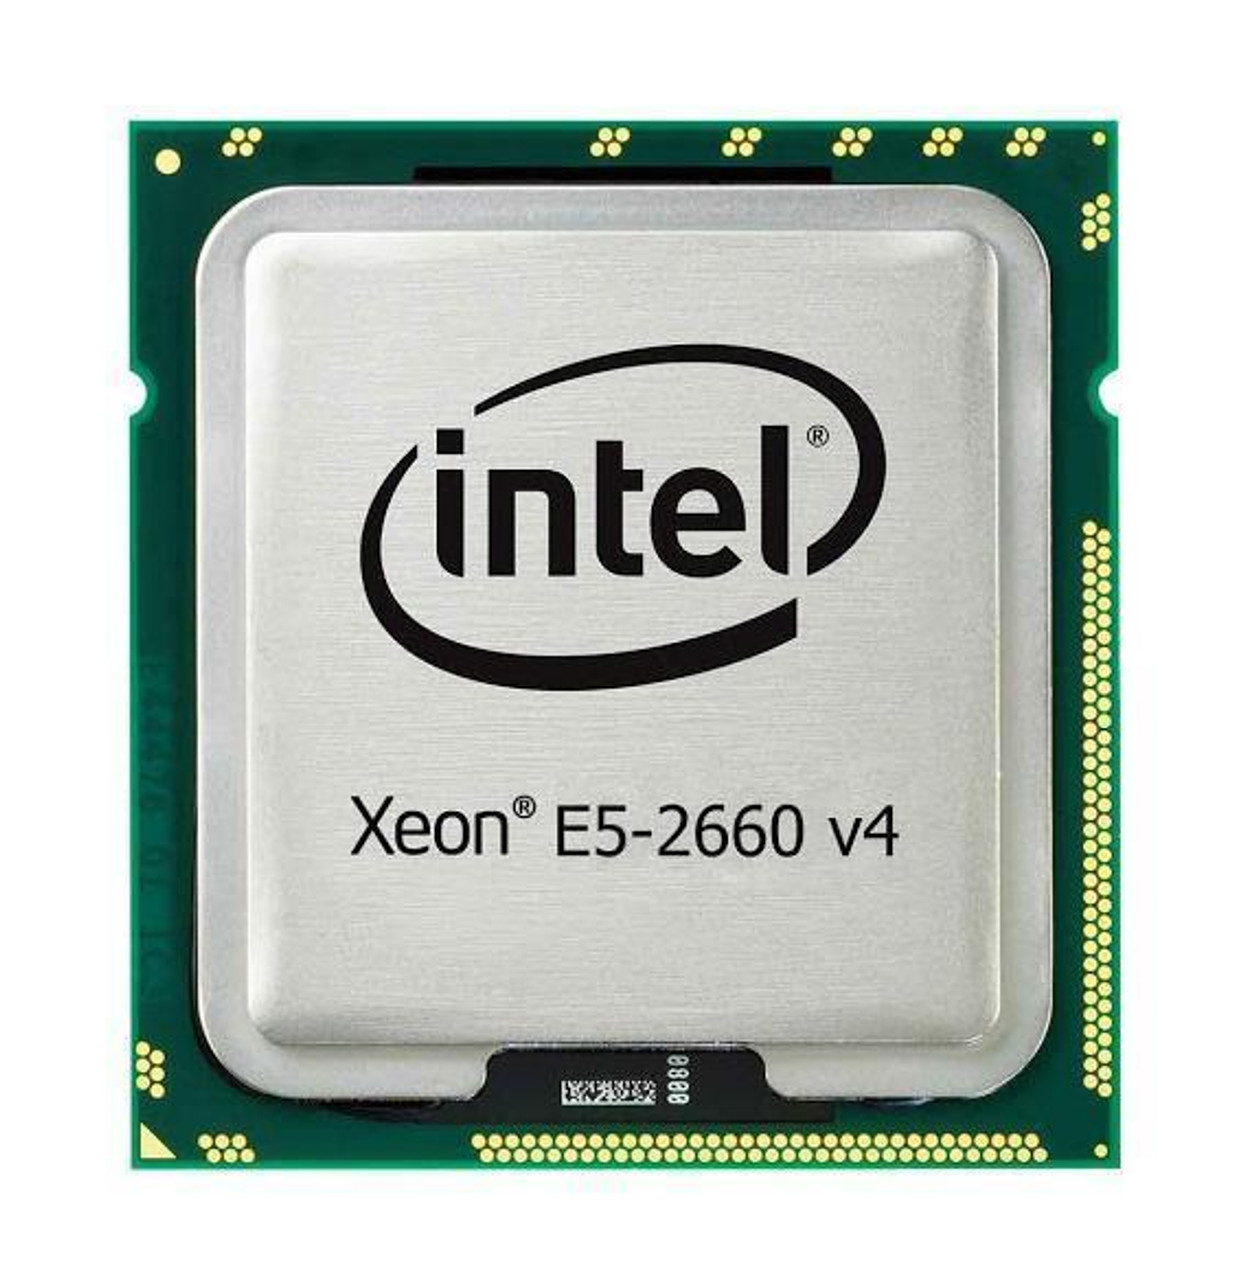 Fujistu 2.00GHz 9.60GT/s QPI 35MB L3 Cache Socket FCLGA2011-3 Intel Xeon E5-2660 v4 14-Core Processor Upgrade